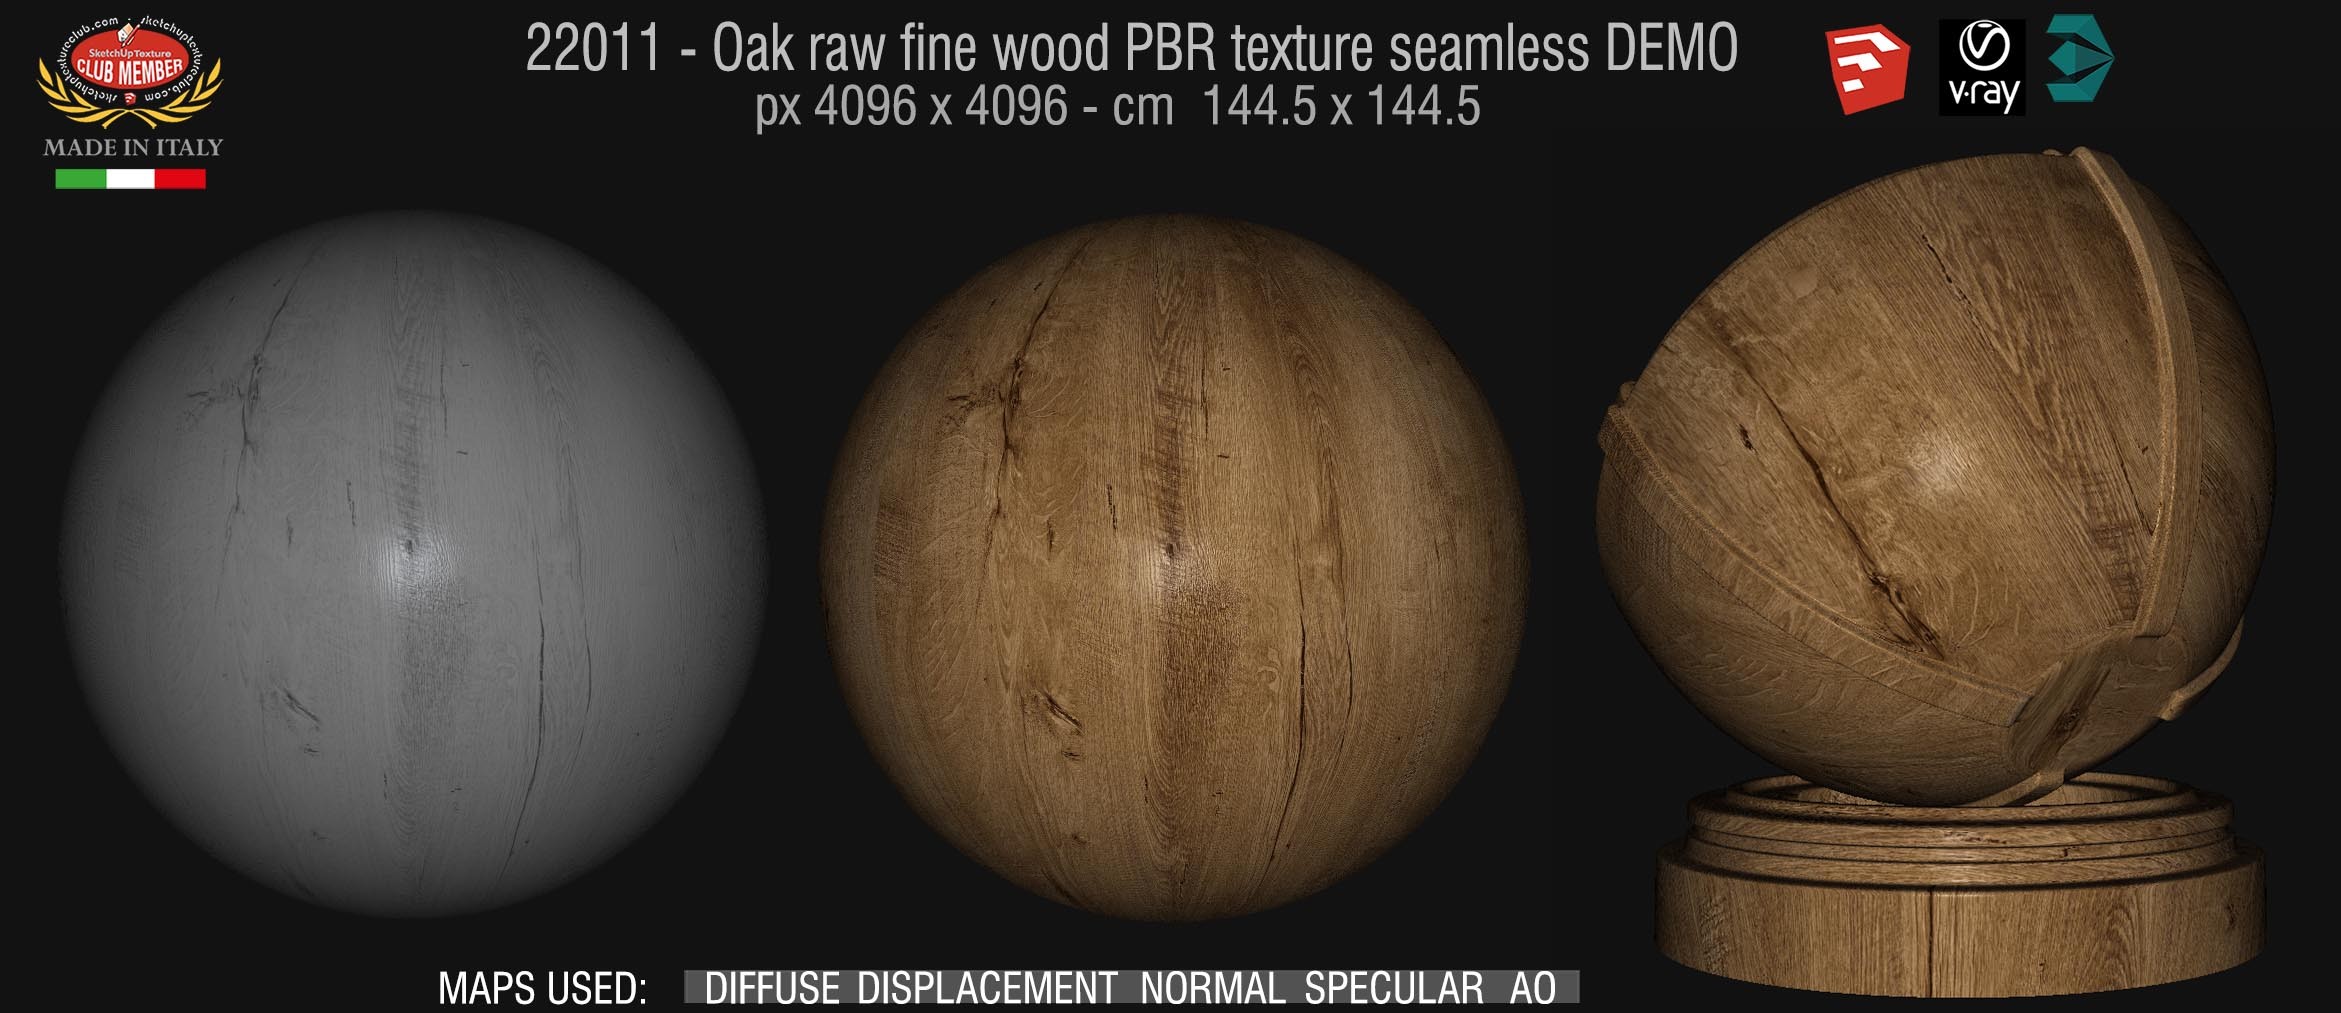 22011 oak raw fine wood PBR texture seamless DEMO